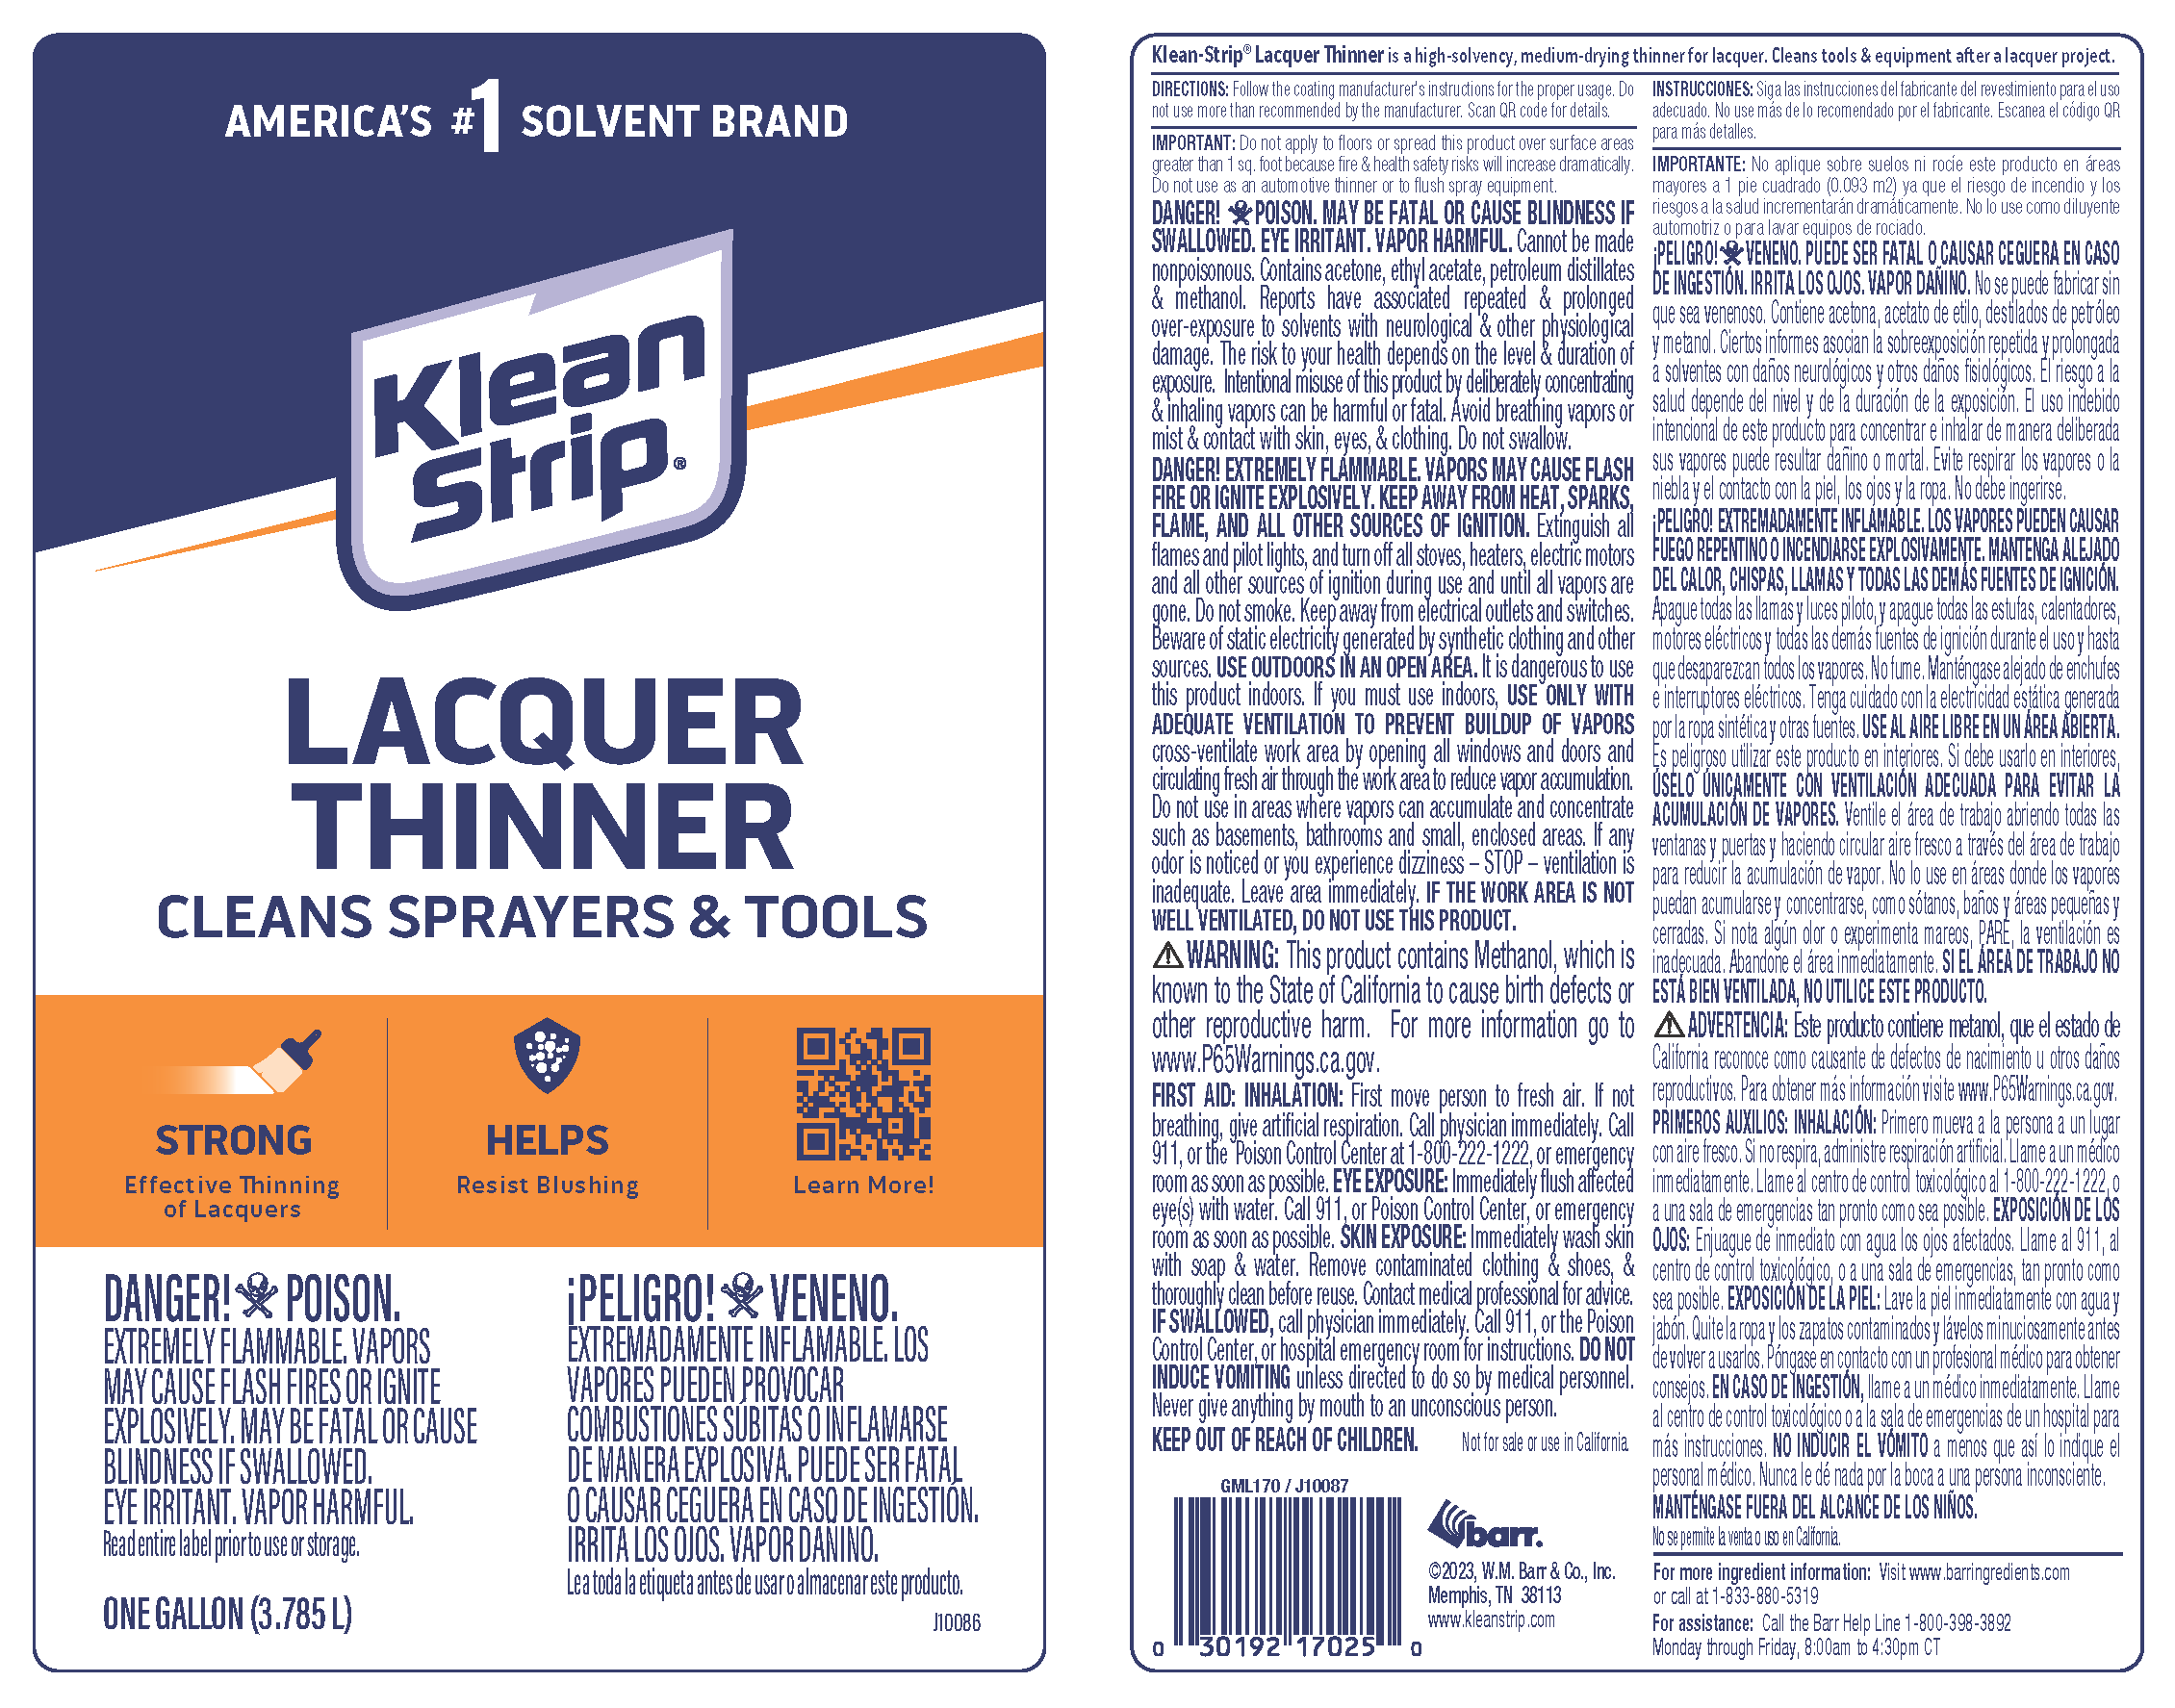 Klean-Strip 1 Gallon Lacquer Thinner